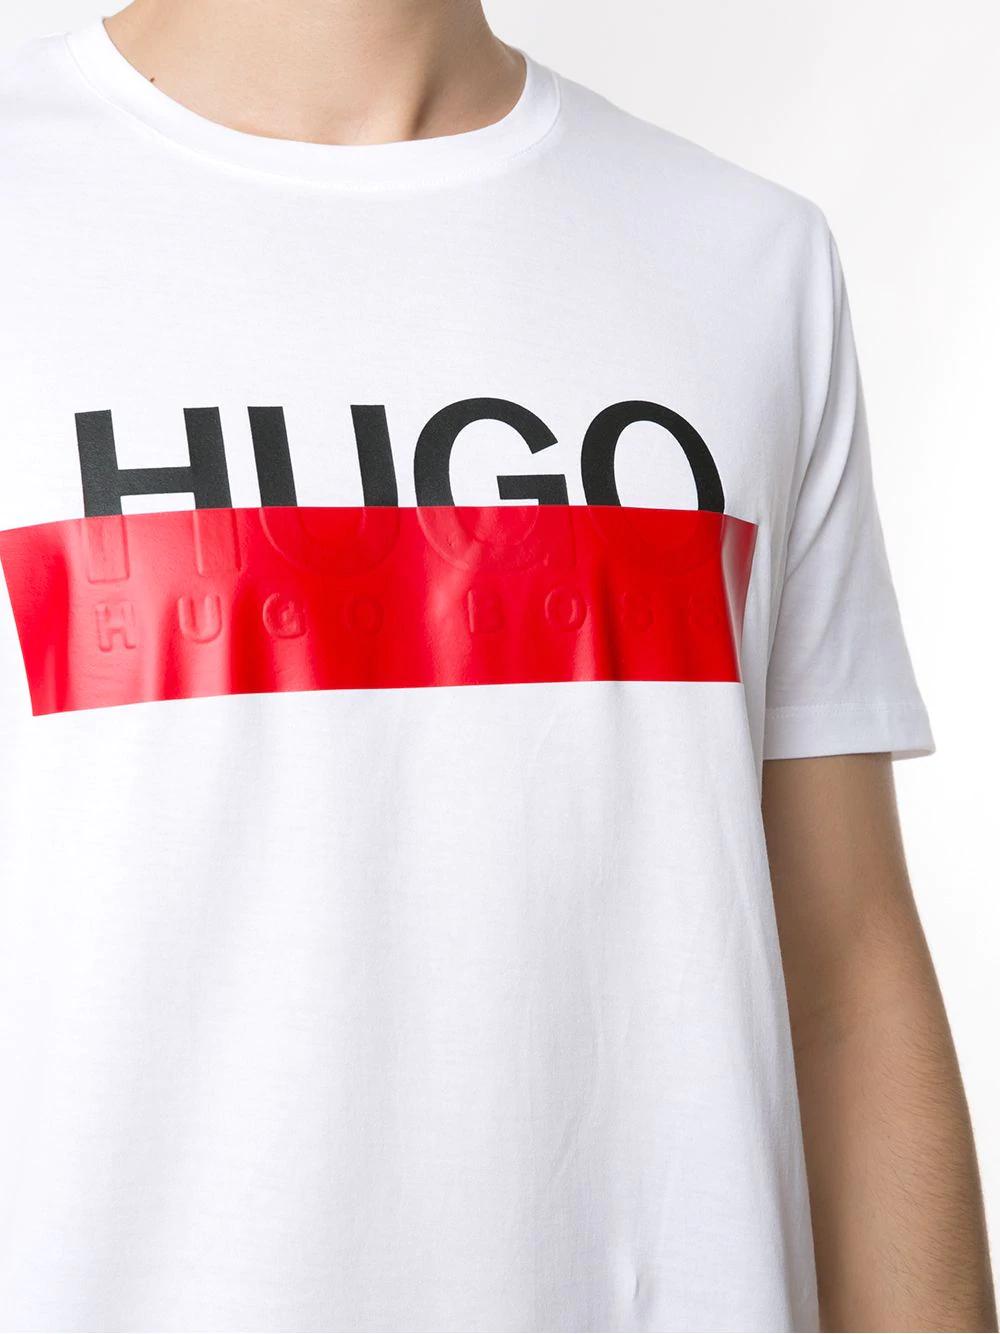 BOSS by HUGO BOSS Olive Logo T Shirt in White for Men | Lyst